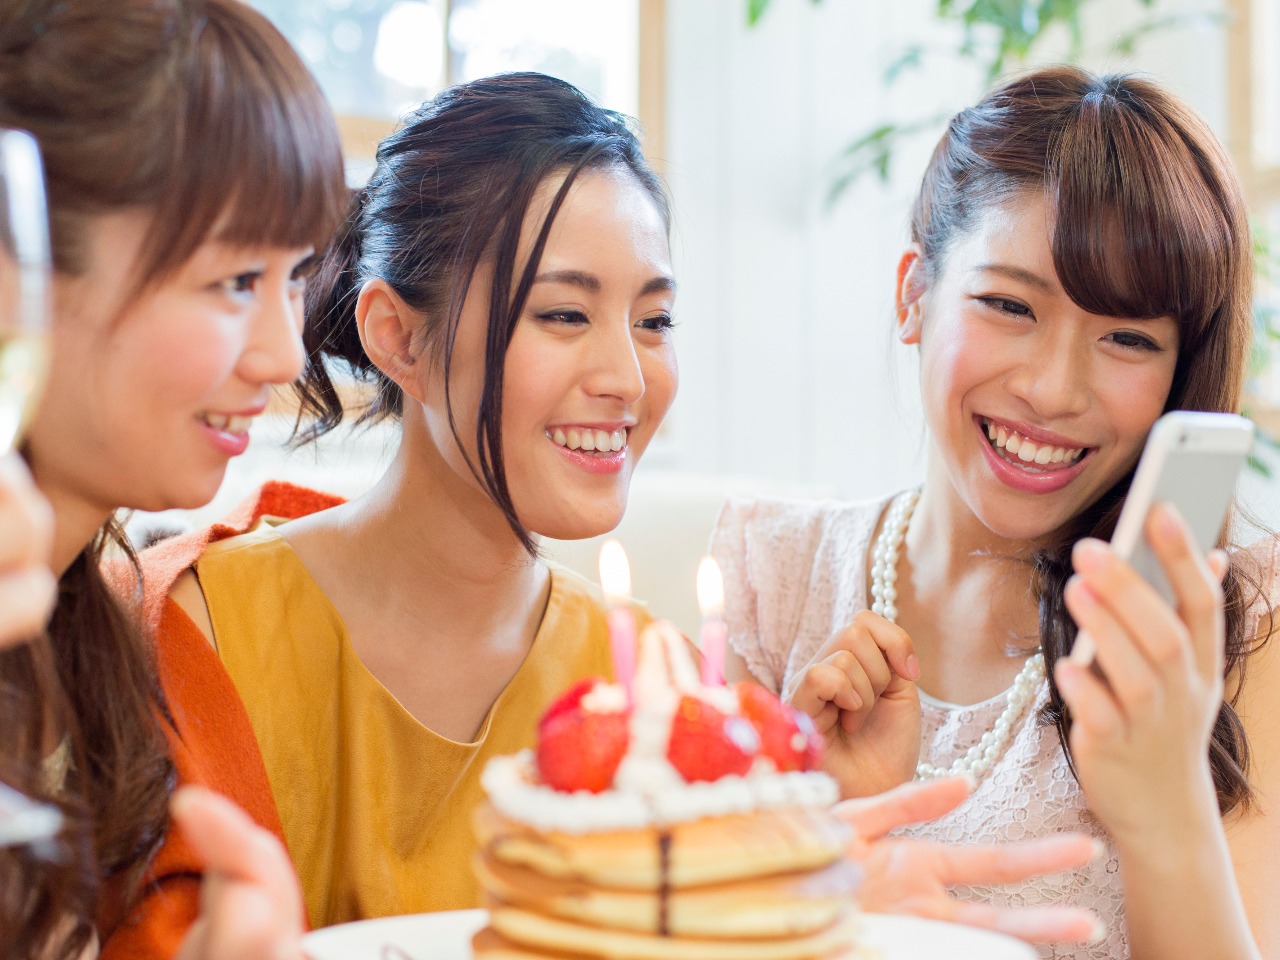 LINE占いでお友達へのプレゼントなら東京渋谷で人気の占い館「婚活もできる占い館BCAFE（ビーカフェ）渋谷店」の占いチケットをお誕生日プレゼントにしては如何でしょうか。